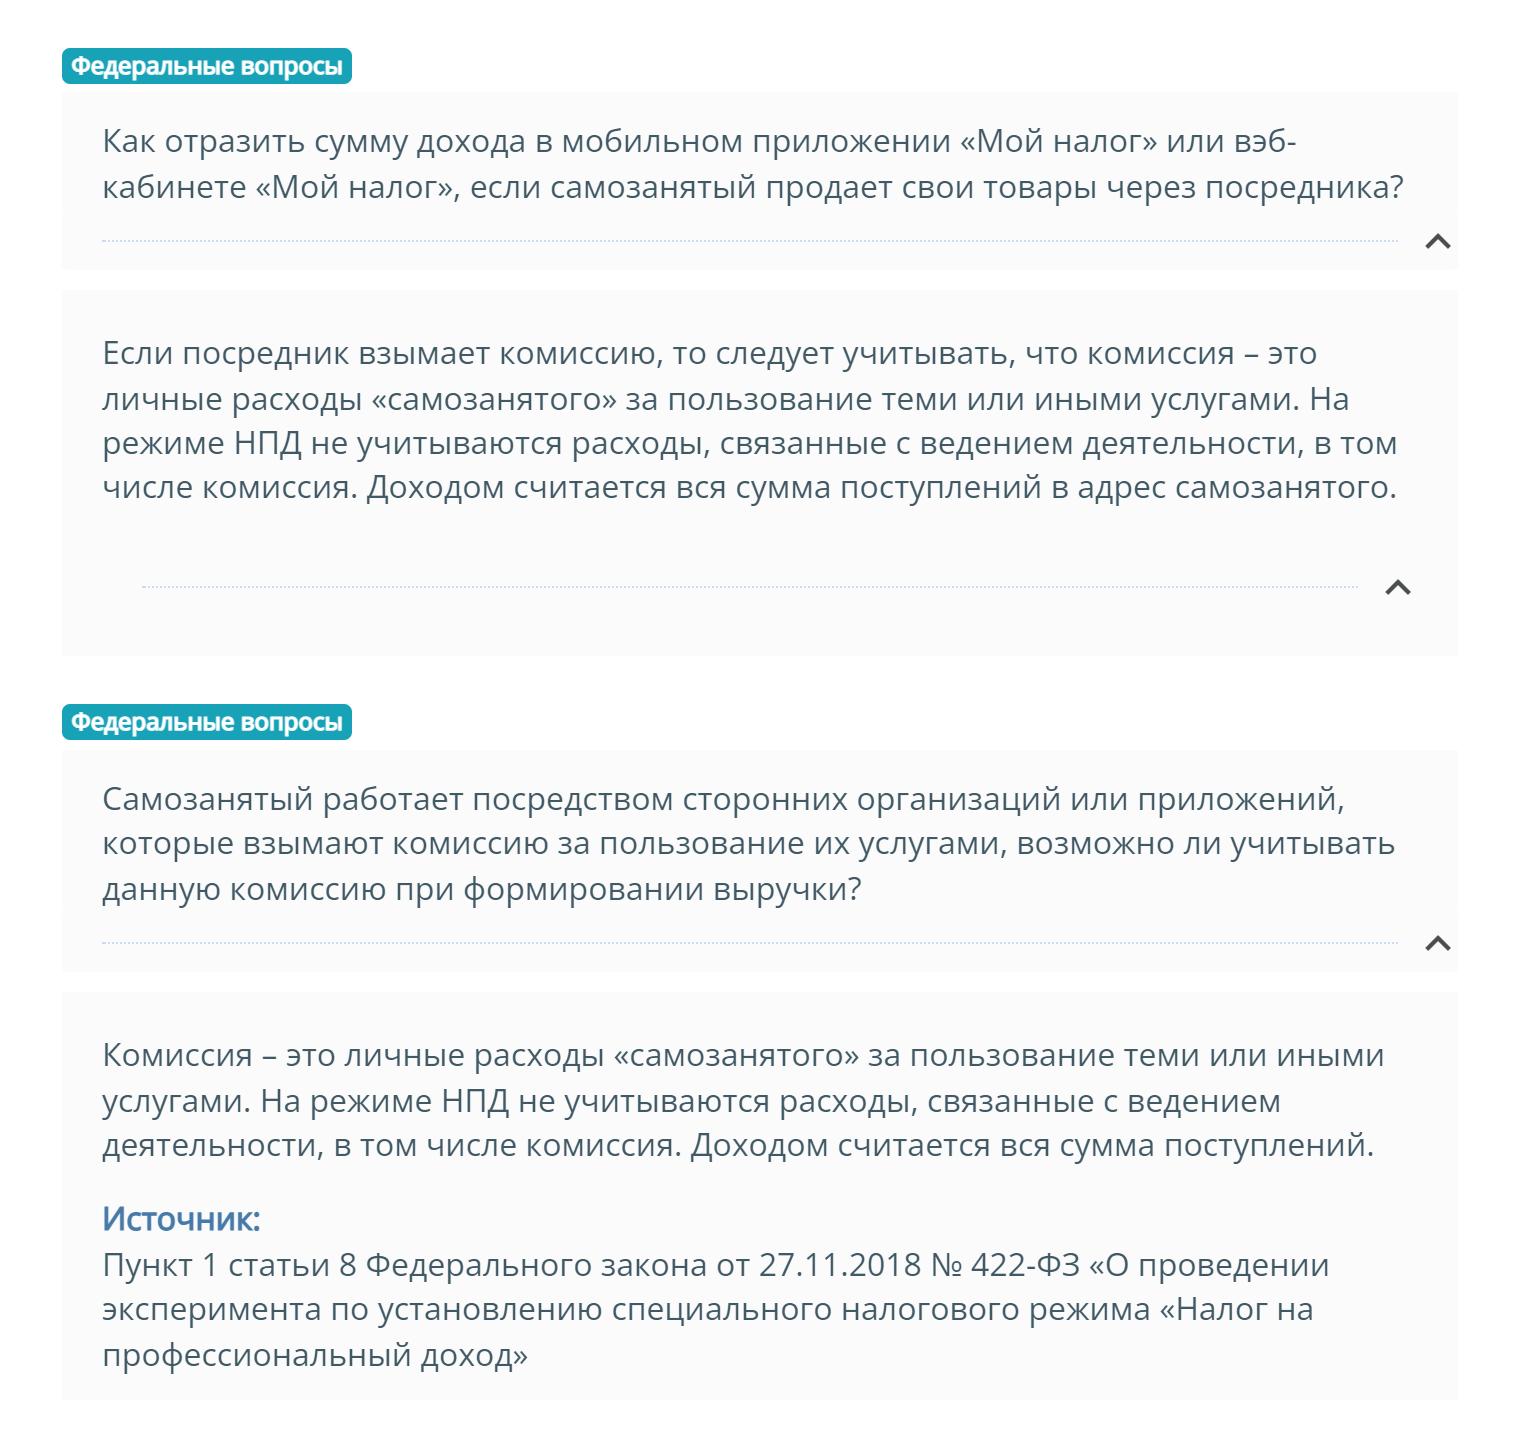 На сайте ФНС в одном из ответов также сказано, что комиссия — это расход самозанятого, который не вычитается из заработка. Источник: nalog.gov.ru